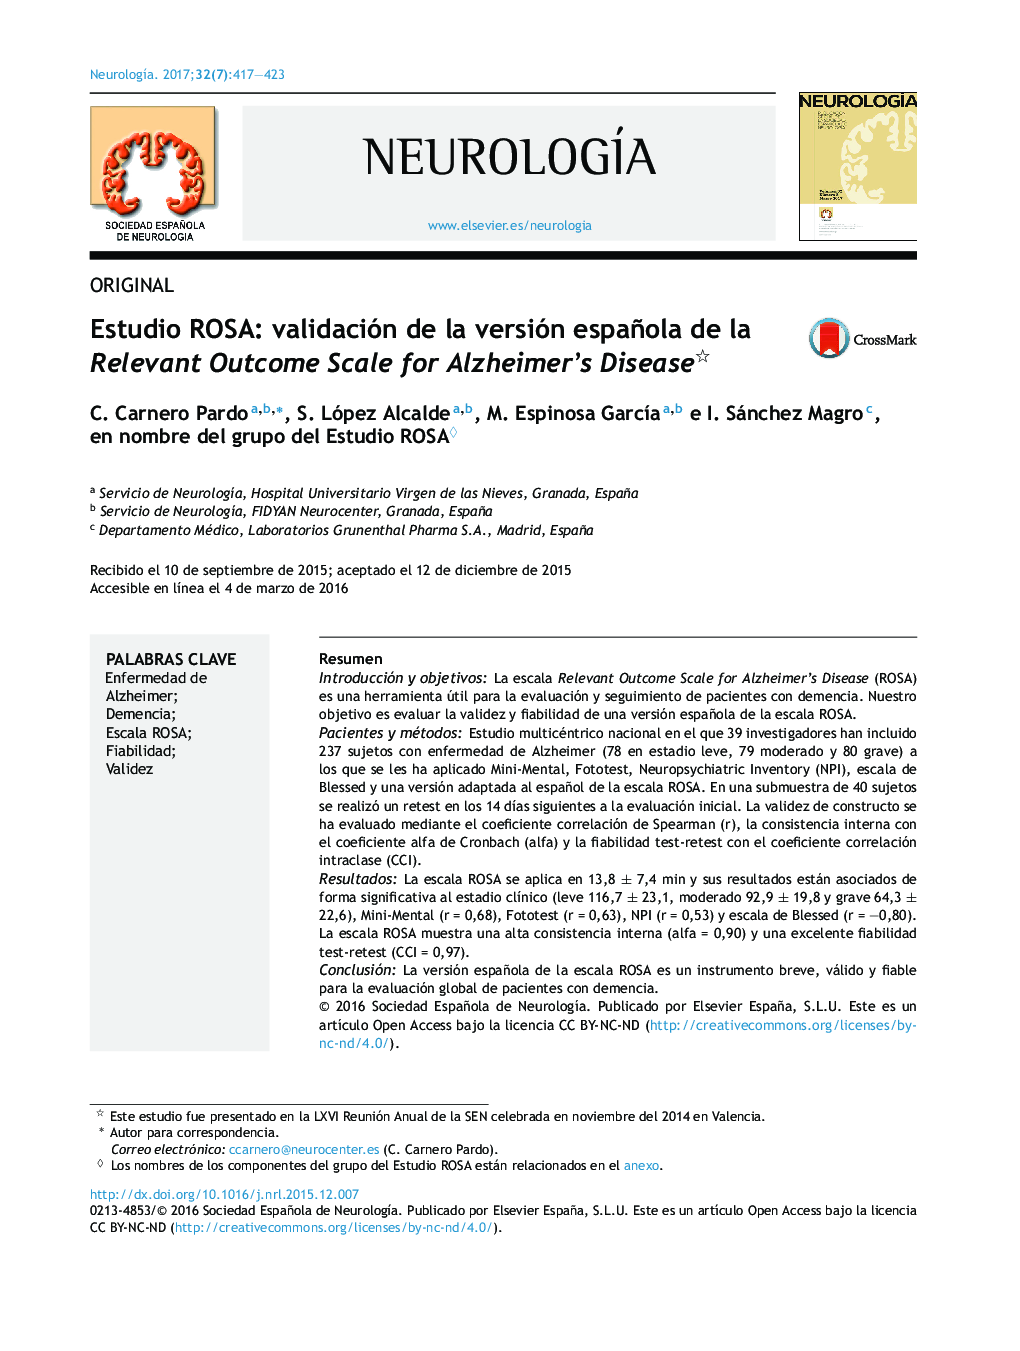 Estudio ROSA: validación de la versión española de la Relevant Outcome Scale for Alzheimer's Disease